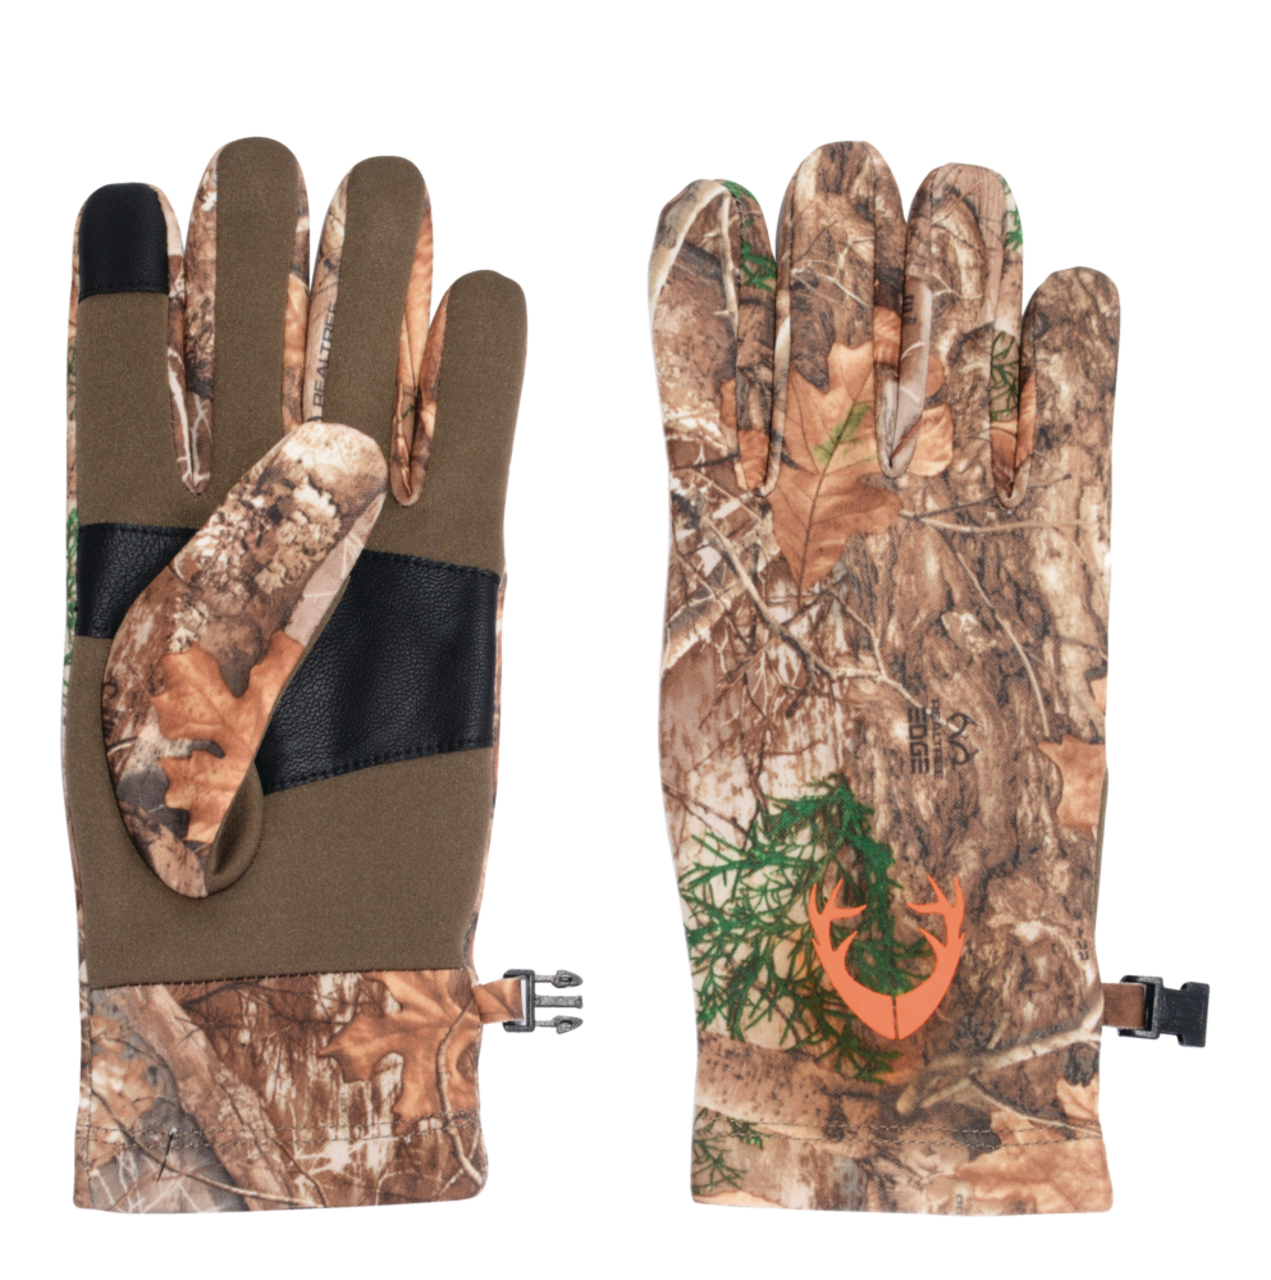 Gant chasse - Achat vente pas cher de gants pour la chasse